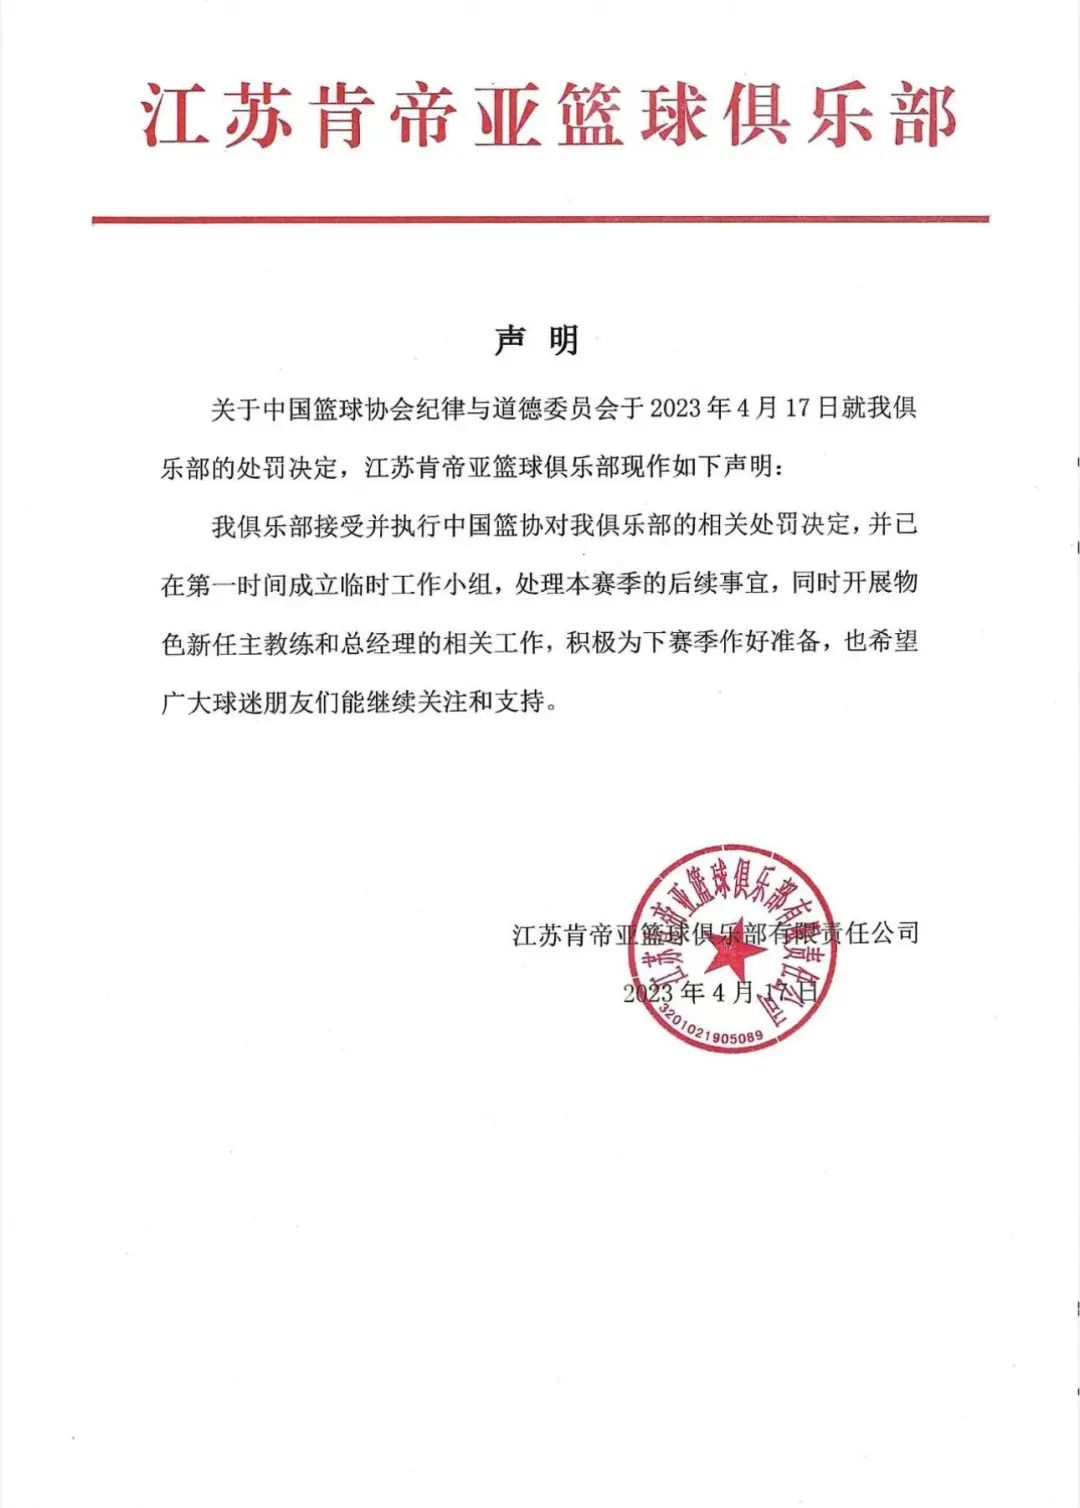 江苏肯帝亚篮球俱乐部：接受处罚决定 开展物色新任主教练和总经理工作